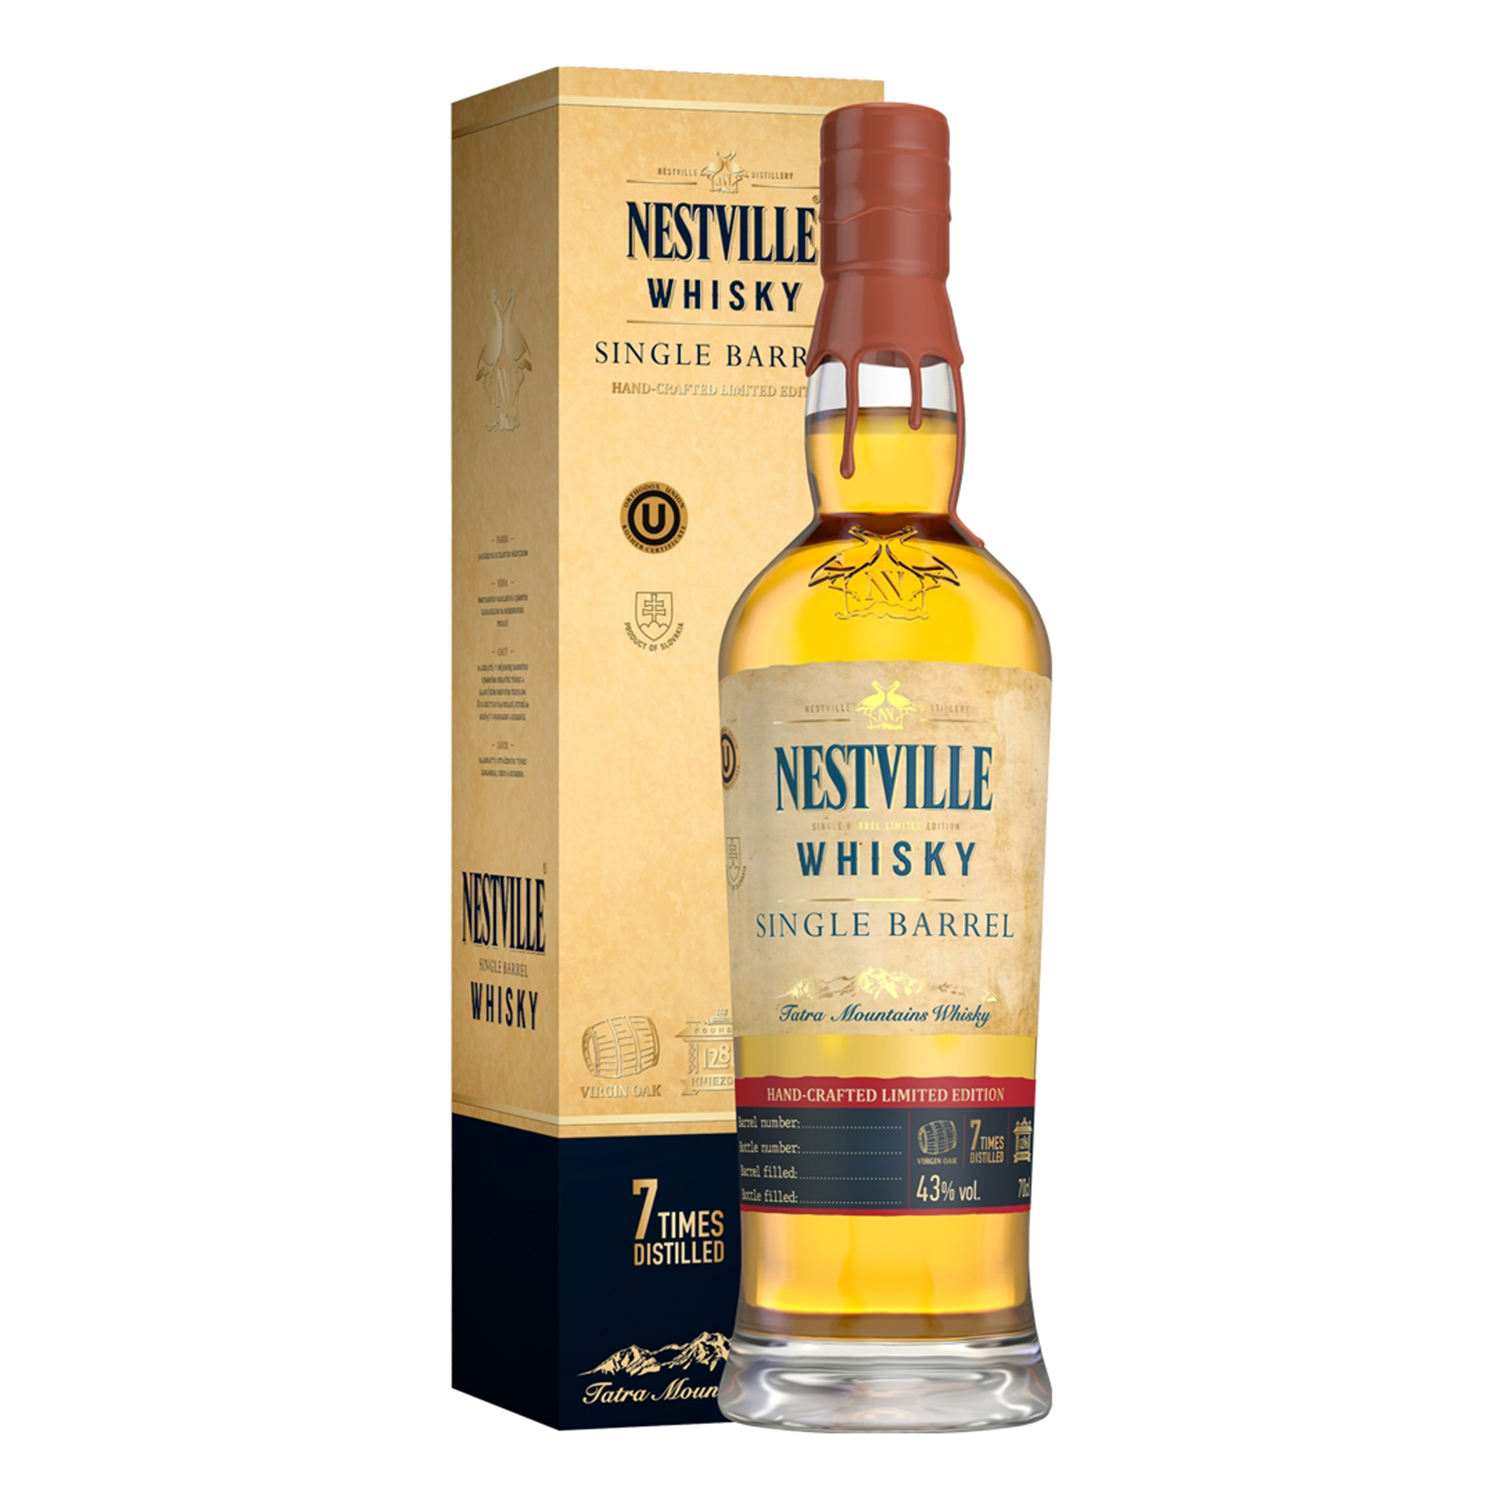 Nestville single barrel 43% 0,7L